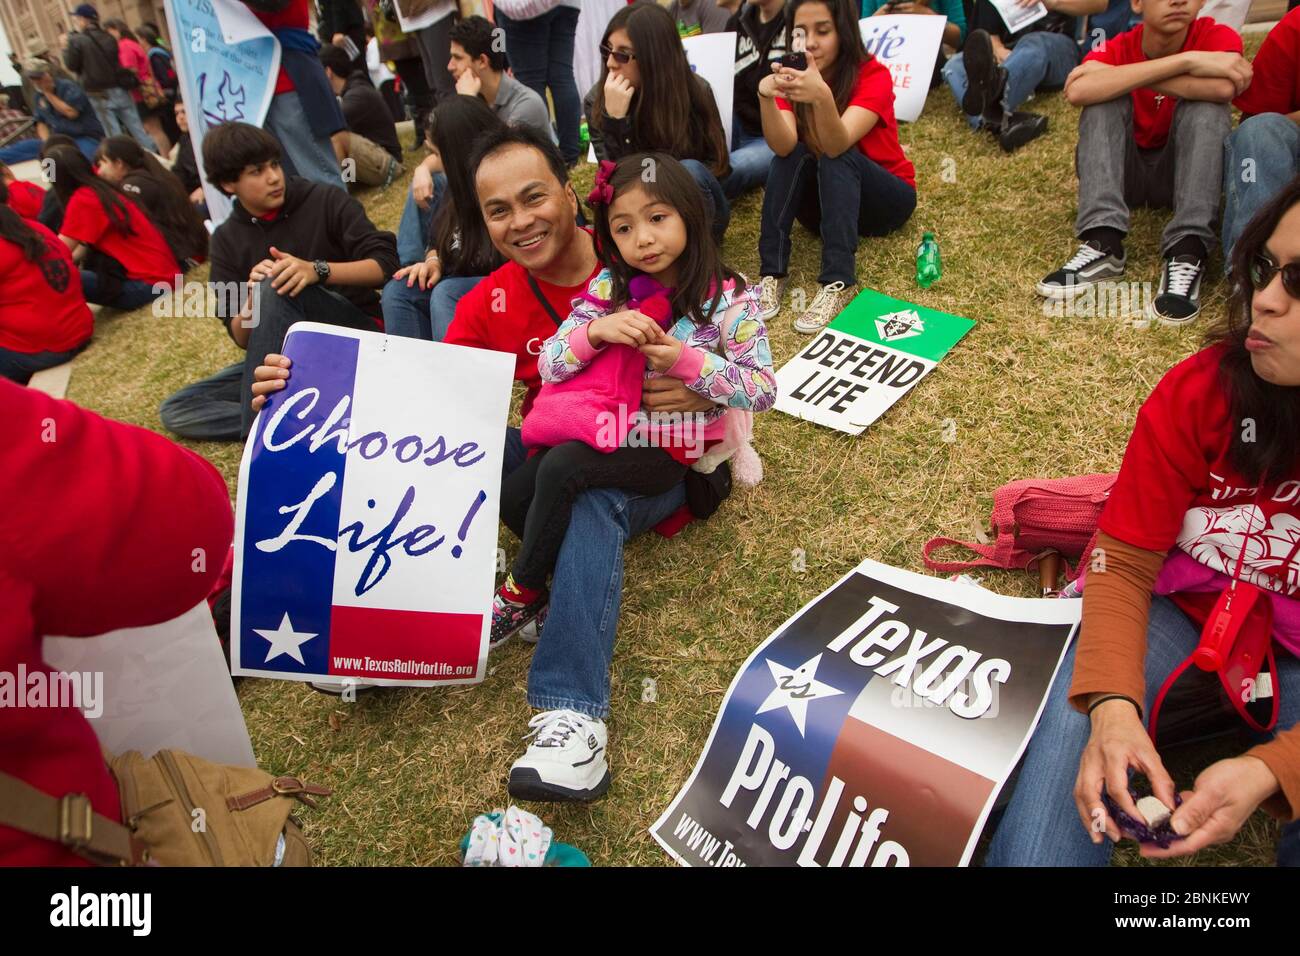 Austin Texas EE.UU., 26 de enero de 2013: Padre y su hija pequeña son parte de una gran multitud reunida en el Capitolio de Texas para una manifestación anual contra el aborto y pro-vida; el evento de este año marca el 40th aniversario de la decisión Roe v. Wade de la Corte Suprema que legaliza algunos abortos. Foto de stock